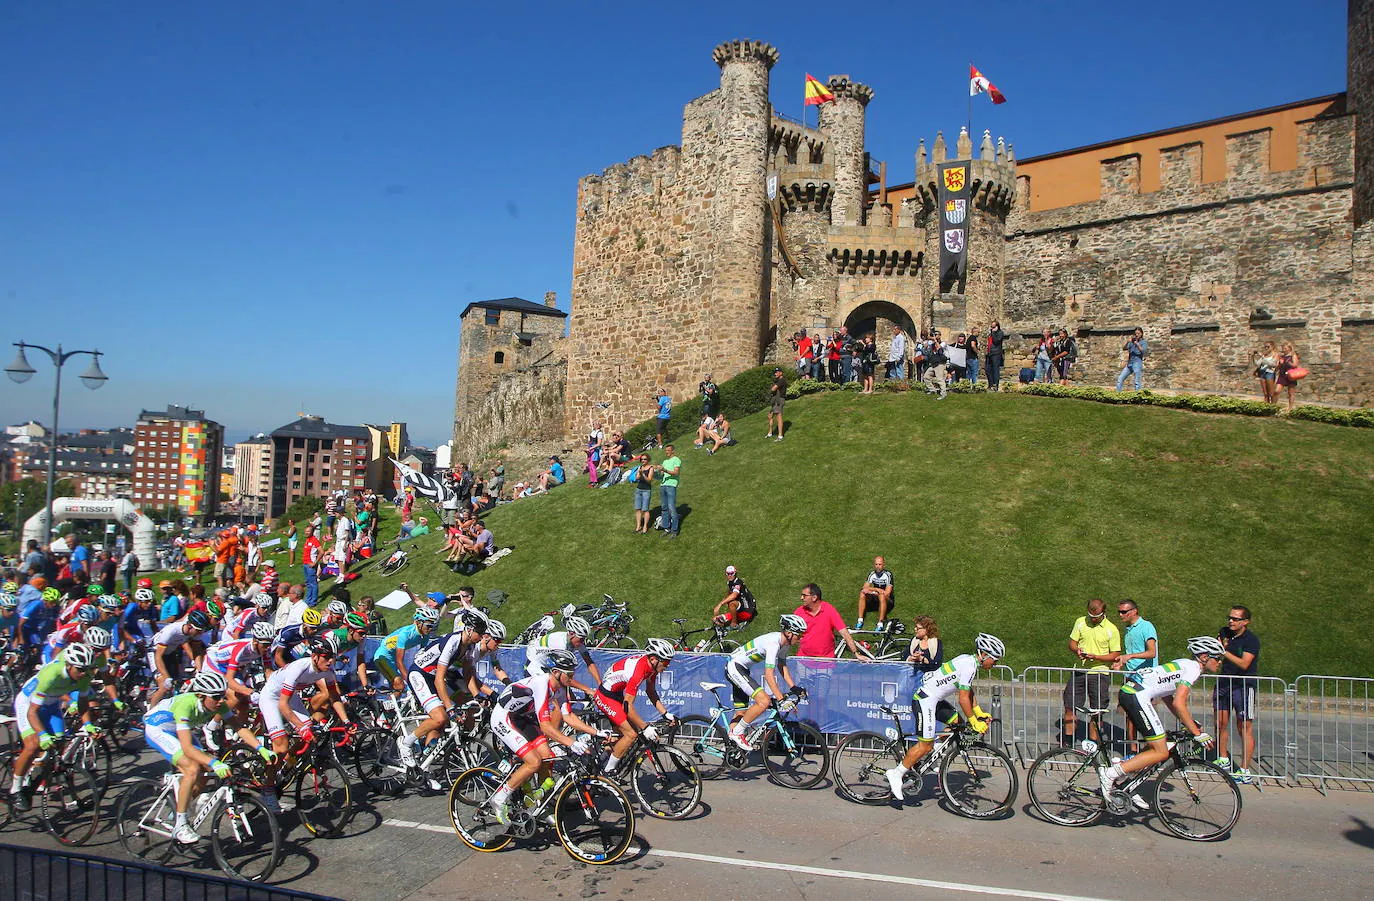 Corredores y espectadores durante el mundial de ciclismo de Ponferrada frente al Castillo de los Templarios